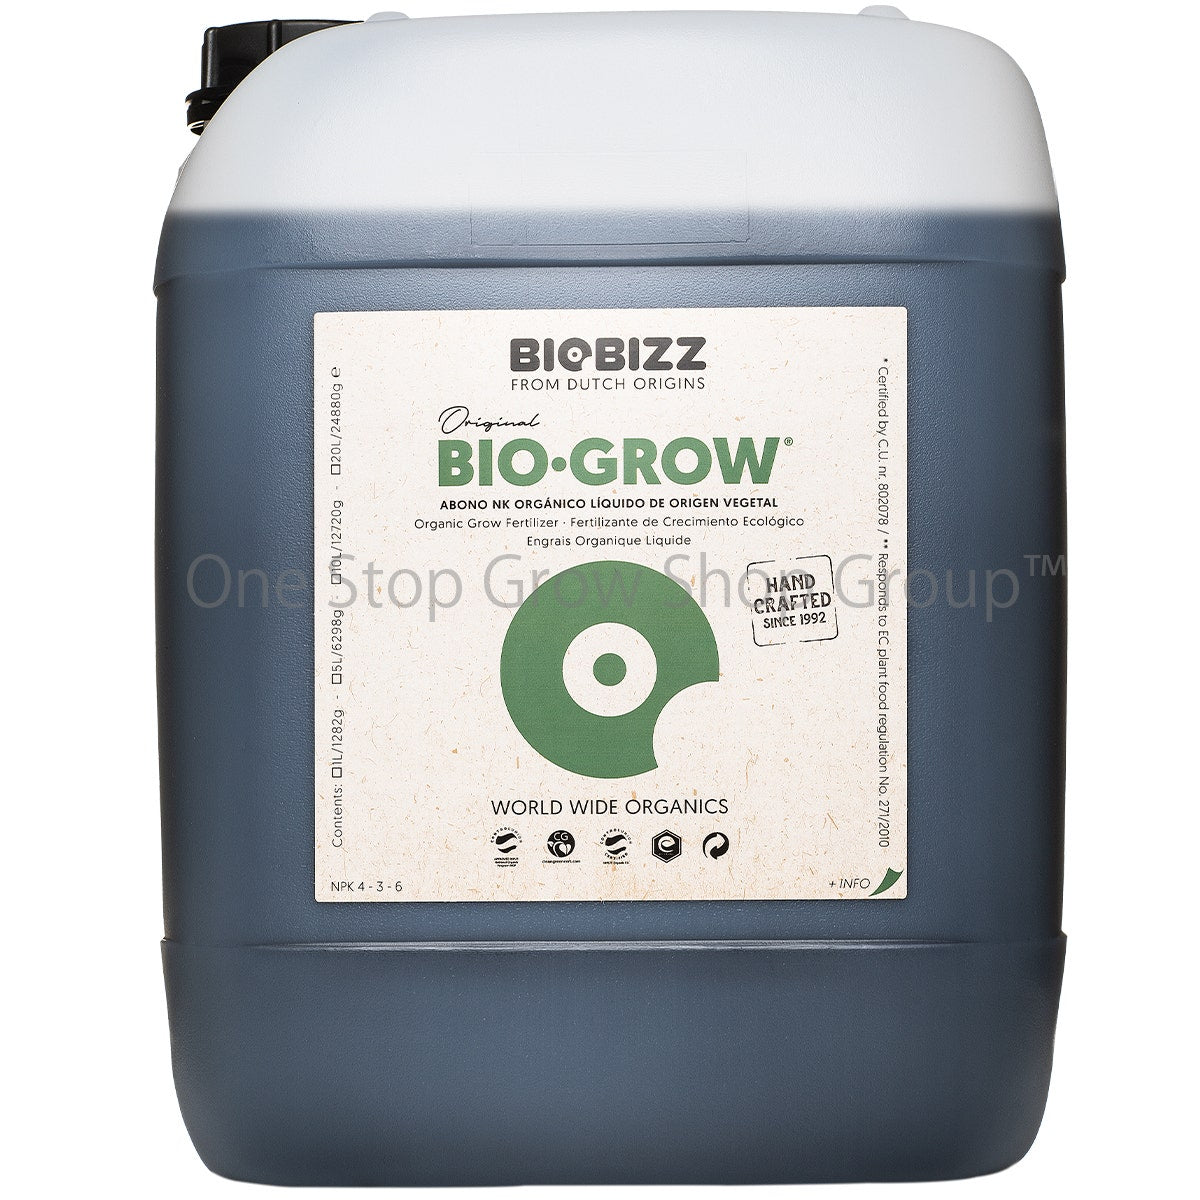 BioBizz Bio-Grow